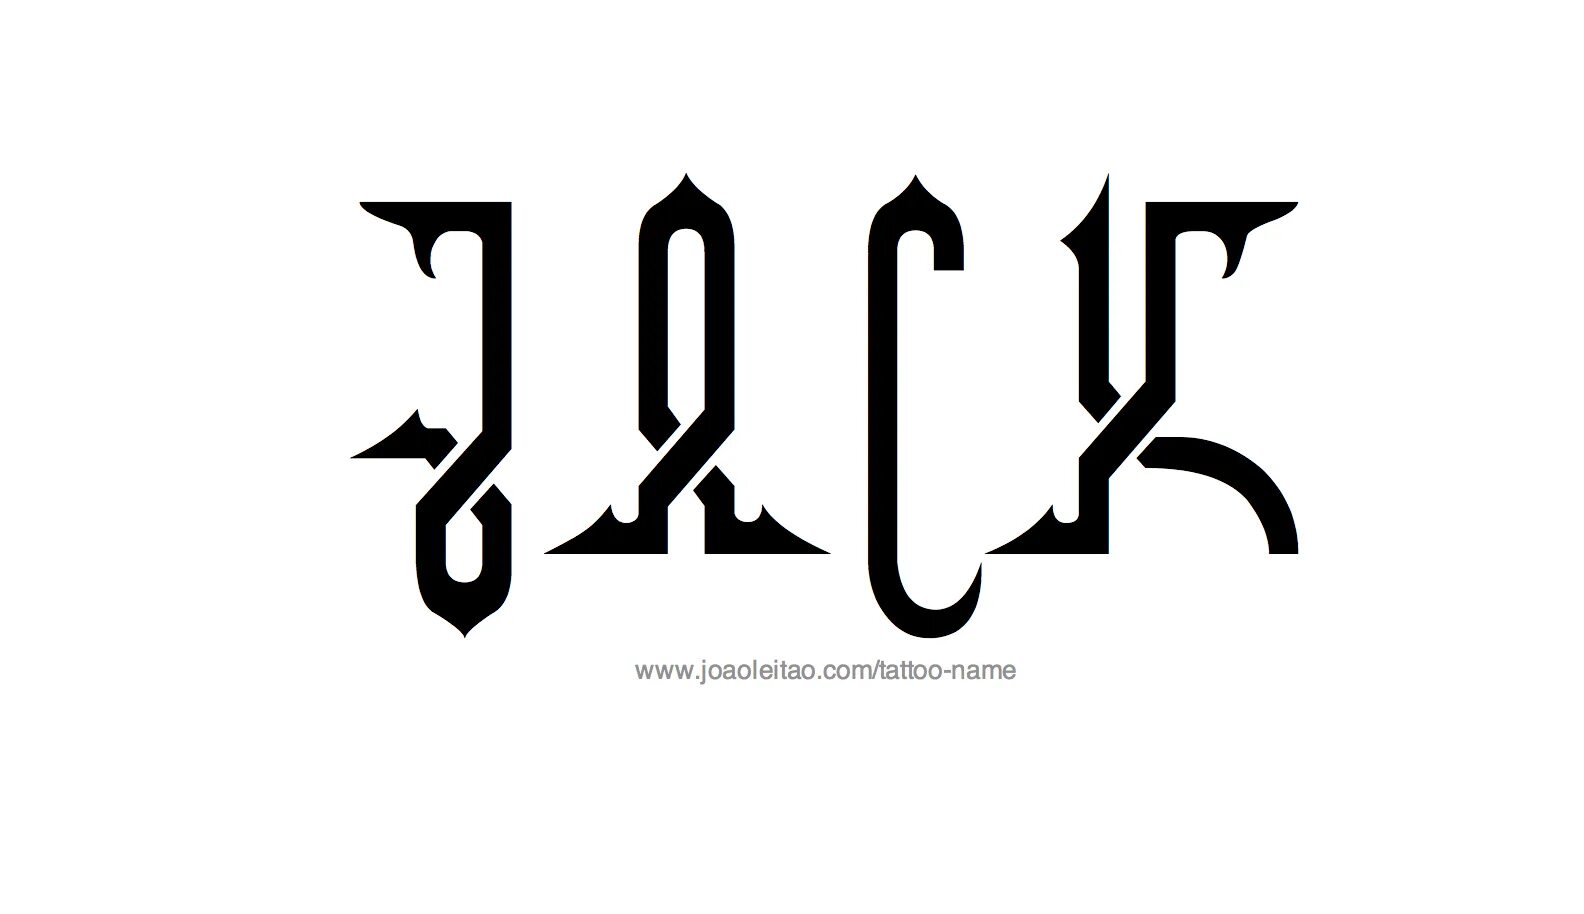 His name jack. Jack имя. Значение имени Джек. Джек имя на английском. Имя Джек разными шрифтом.